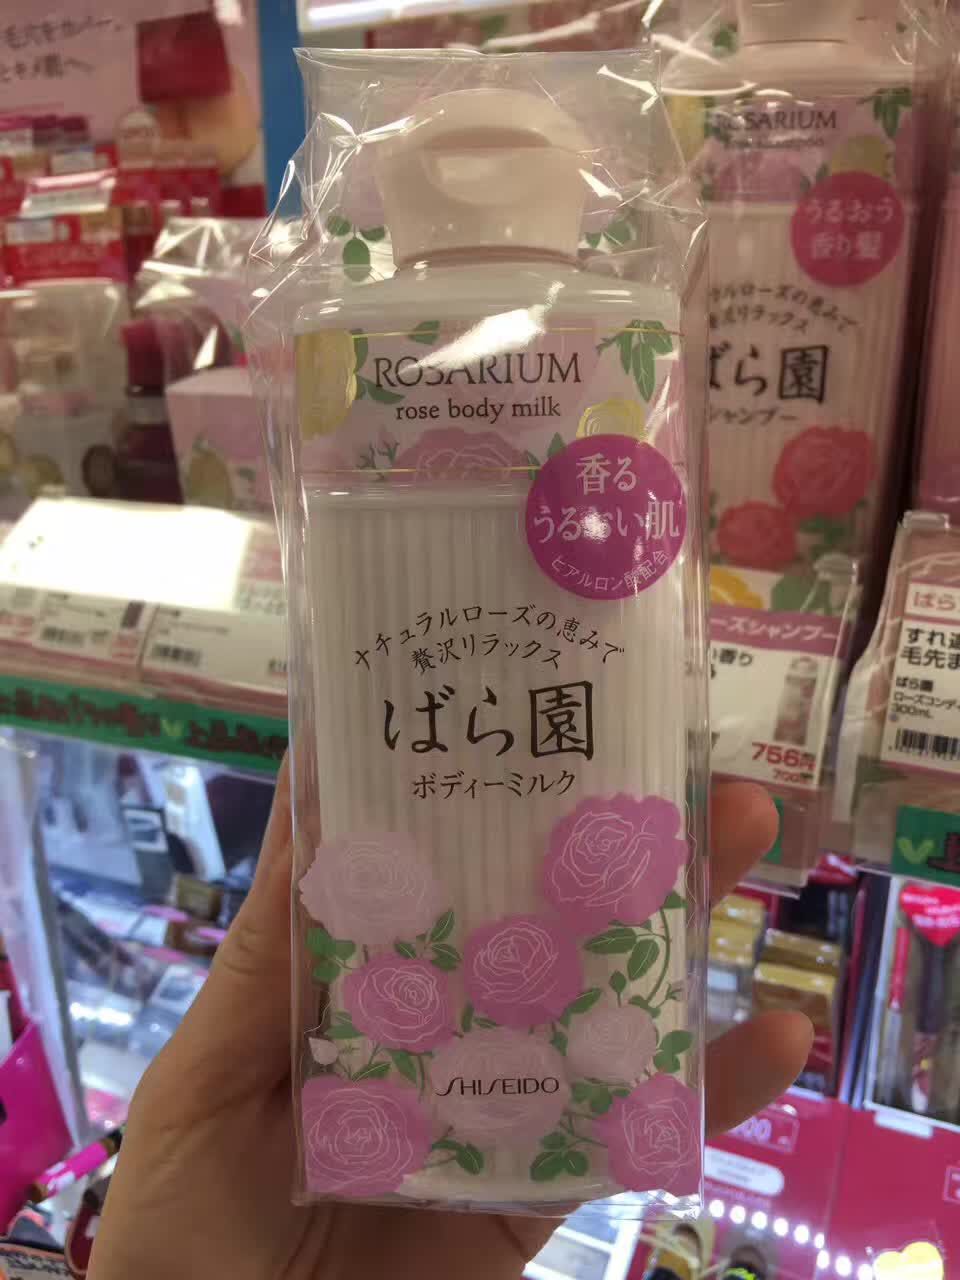 日本代购资生堂玫瑰园Rosarium天然玫瑰精华保湿身体乳液200ml折扣优惠信息